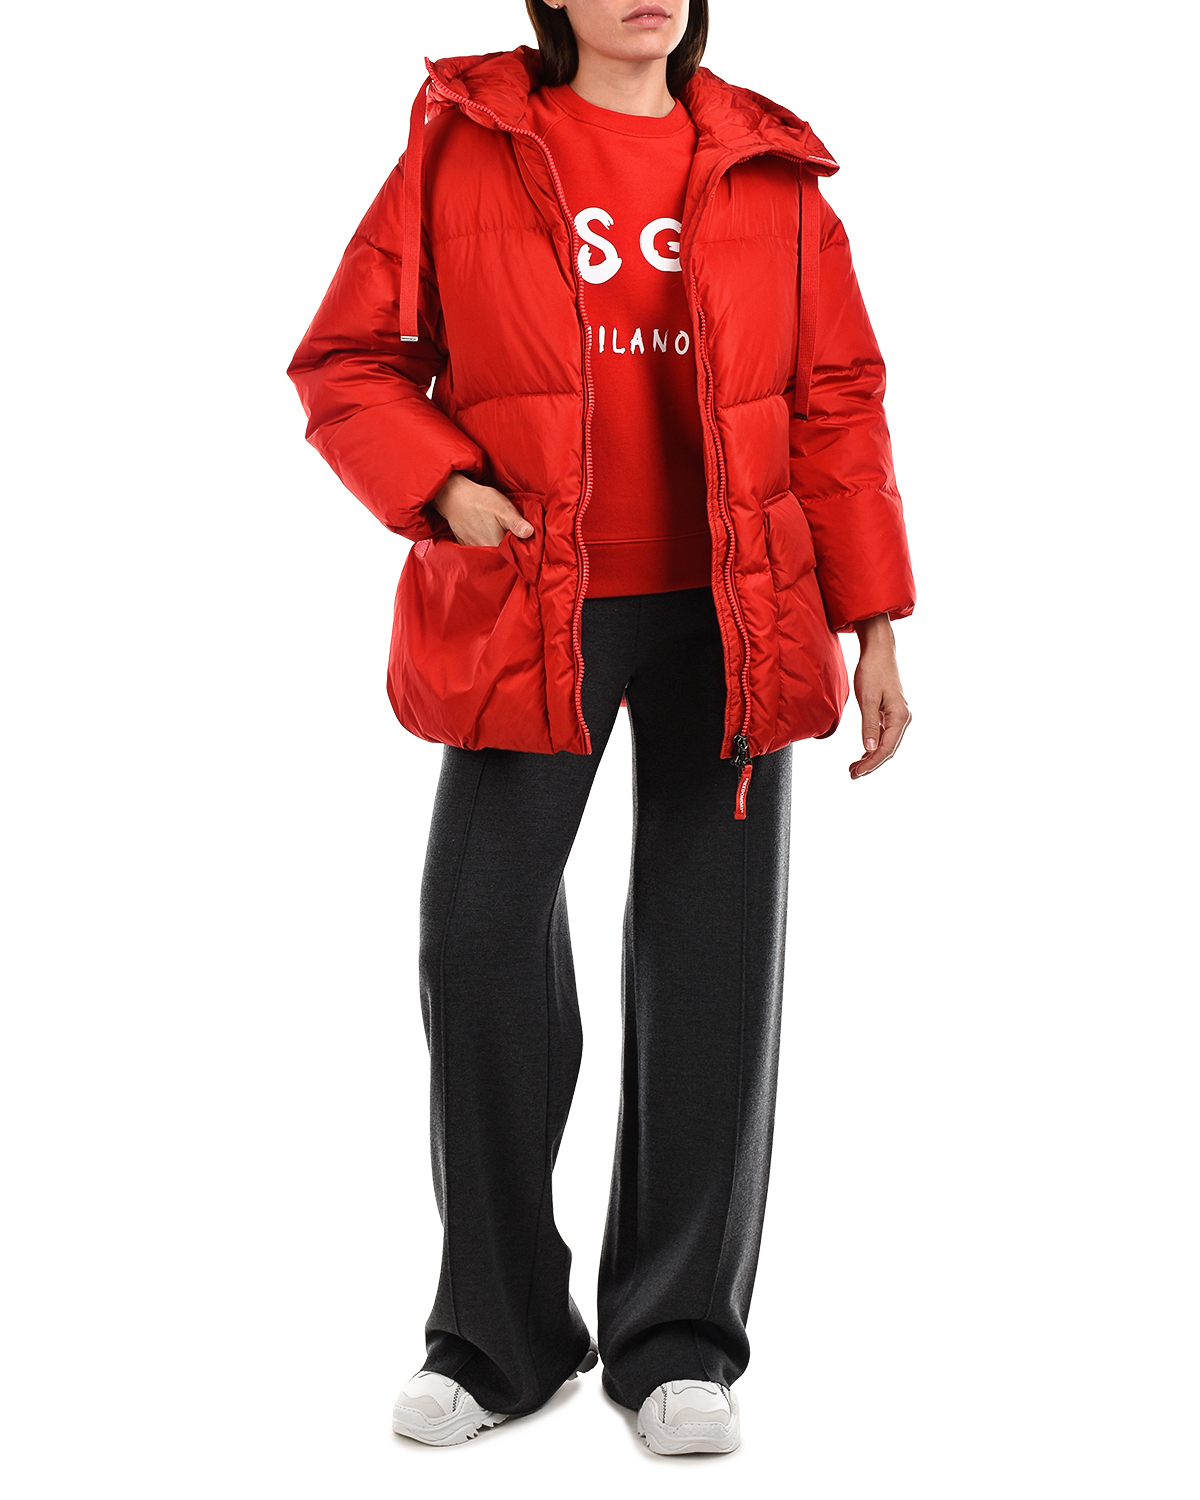 Красная куртка с контрастной подкладкой Freedomday, размер 38, цвет красный - фото 2